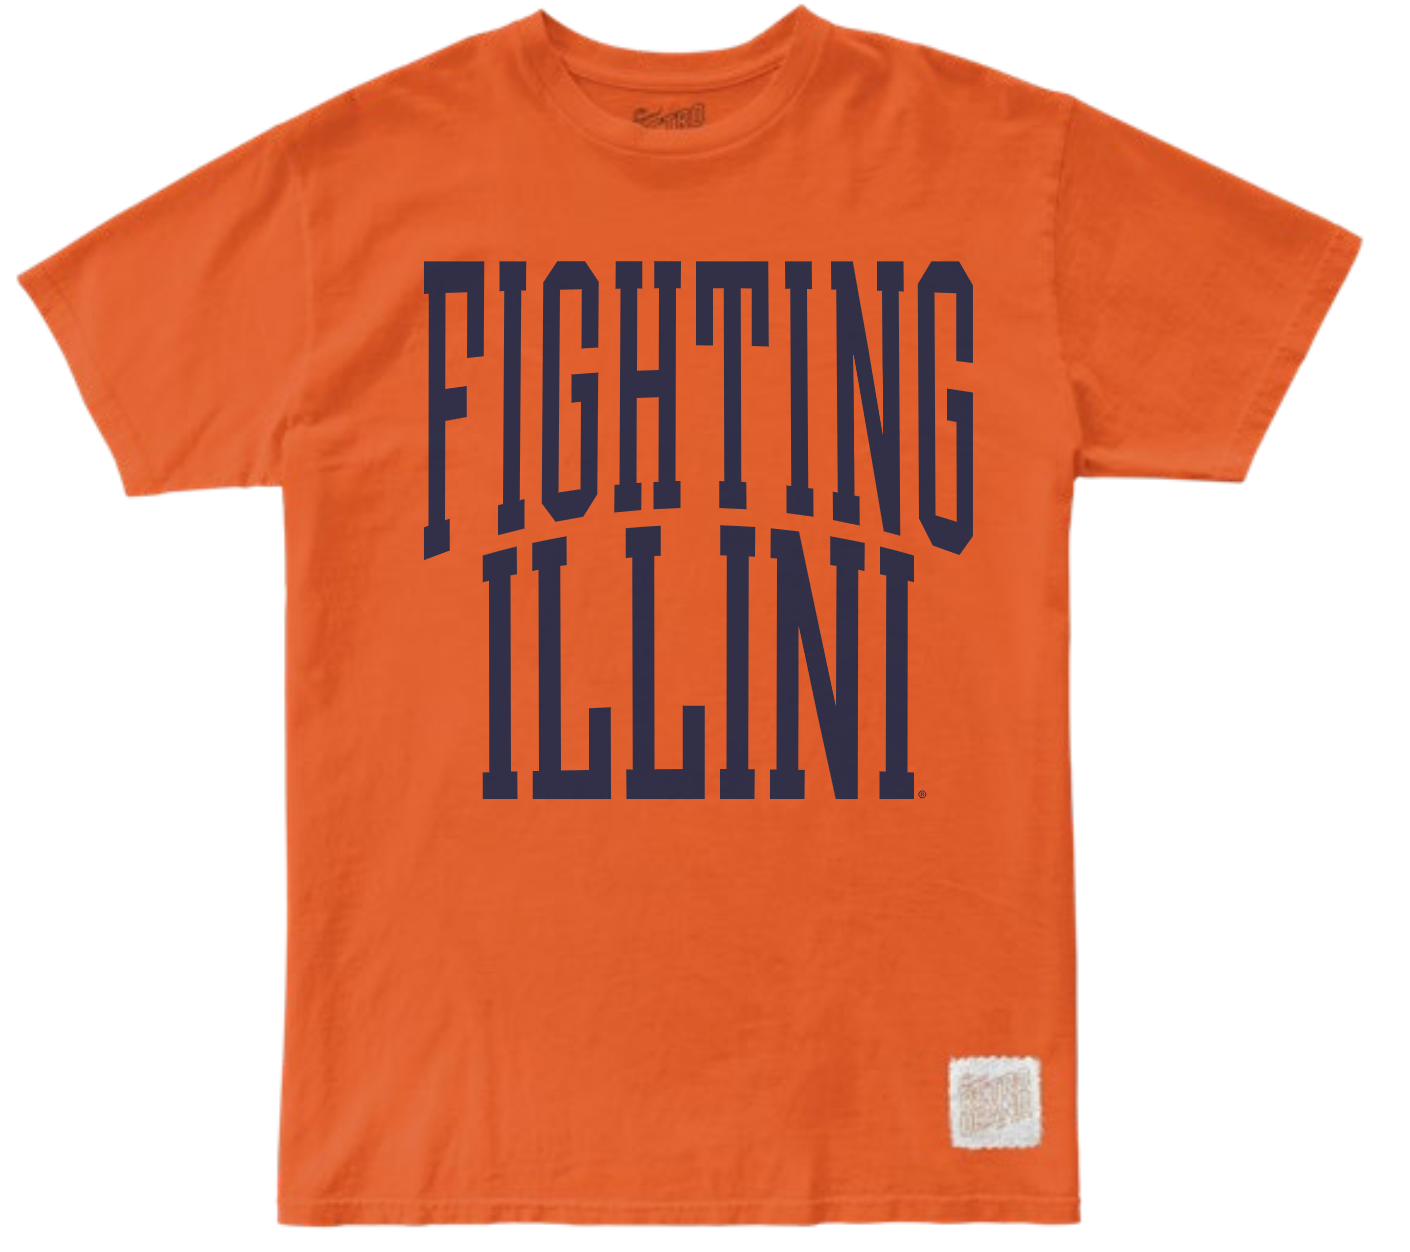 Illinois Fighting Illini 100% Cotton Tee